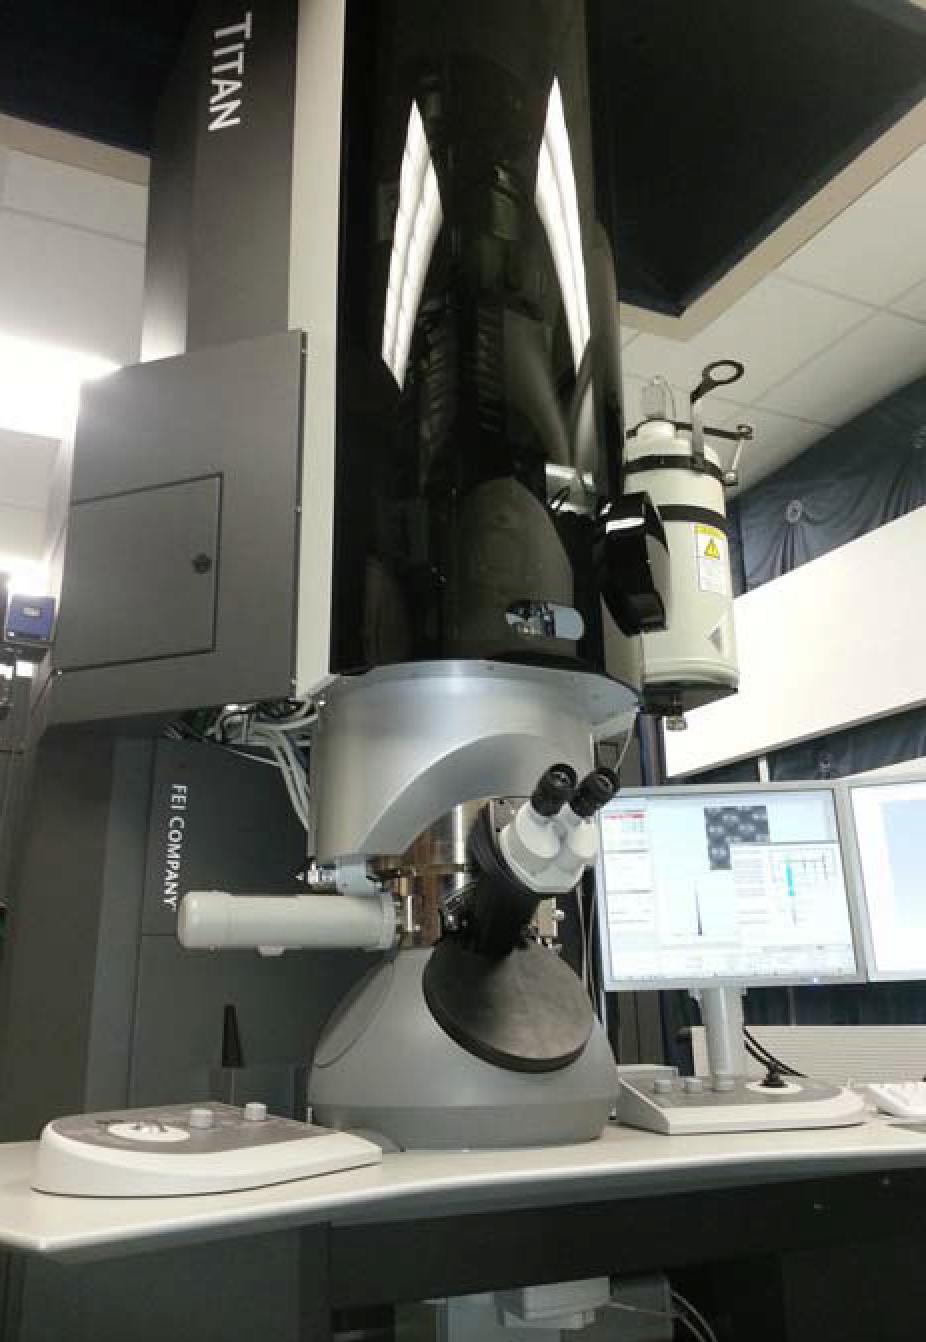 Aberration-Corrected Scanning Transmission Electron Microscope